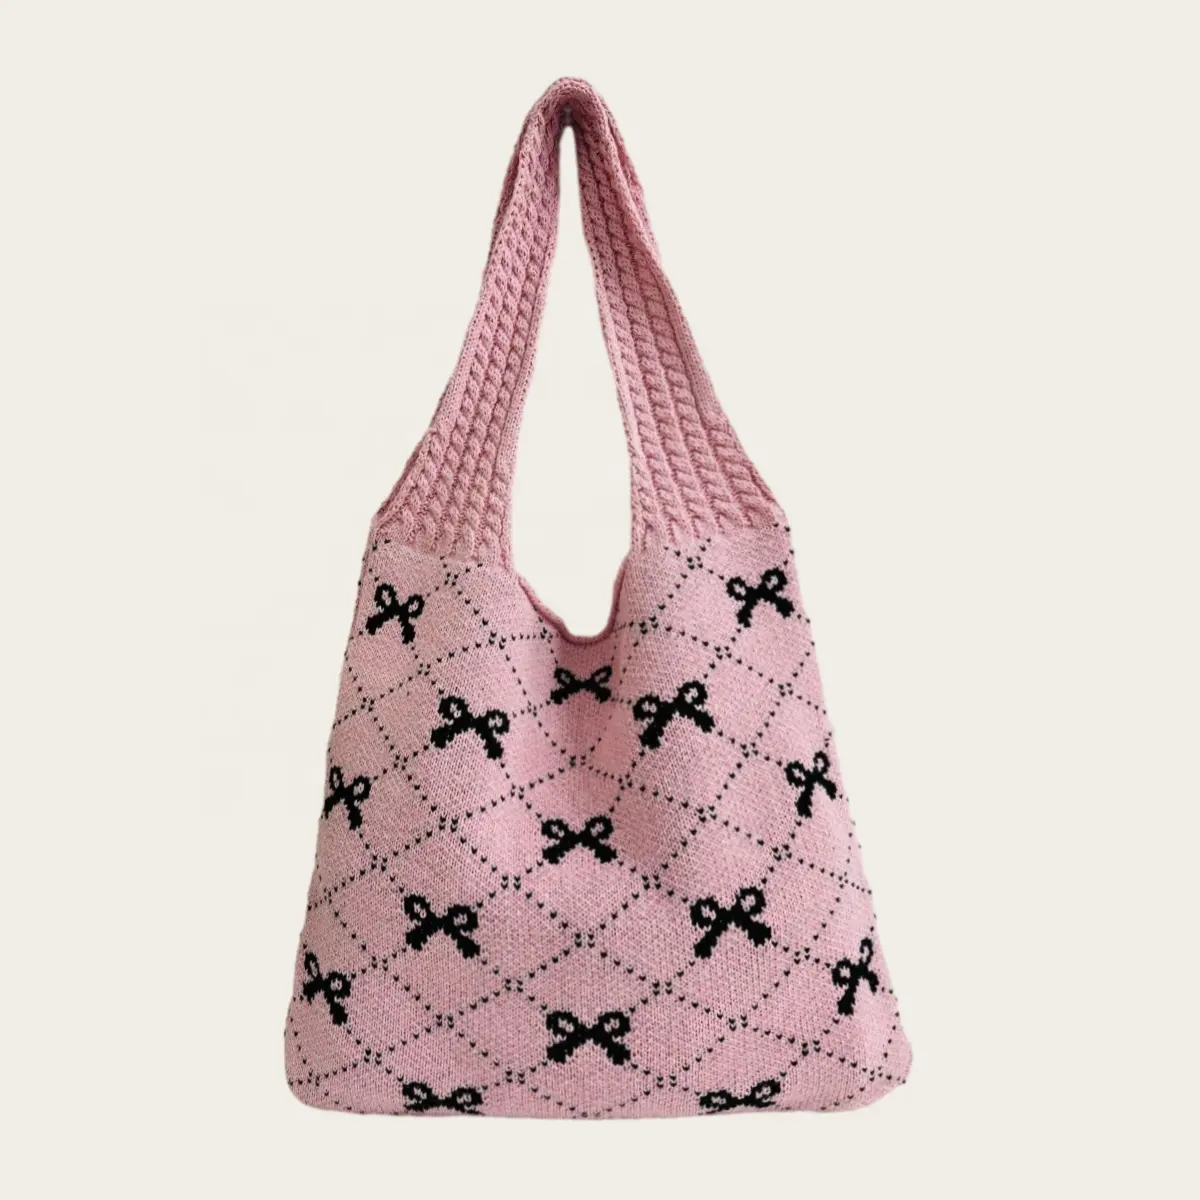 2024 बटरफ्लाई बो कलर ब्लॉकिंग क्रोकेट टोट बैग बड़ी क्षमता वाला फैशन बीच बैग कम्यूट बुना हुआ बैग प्यारा पर्स Y2k उपहार